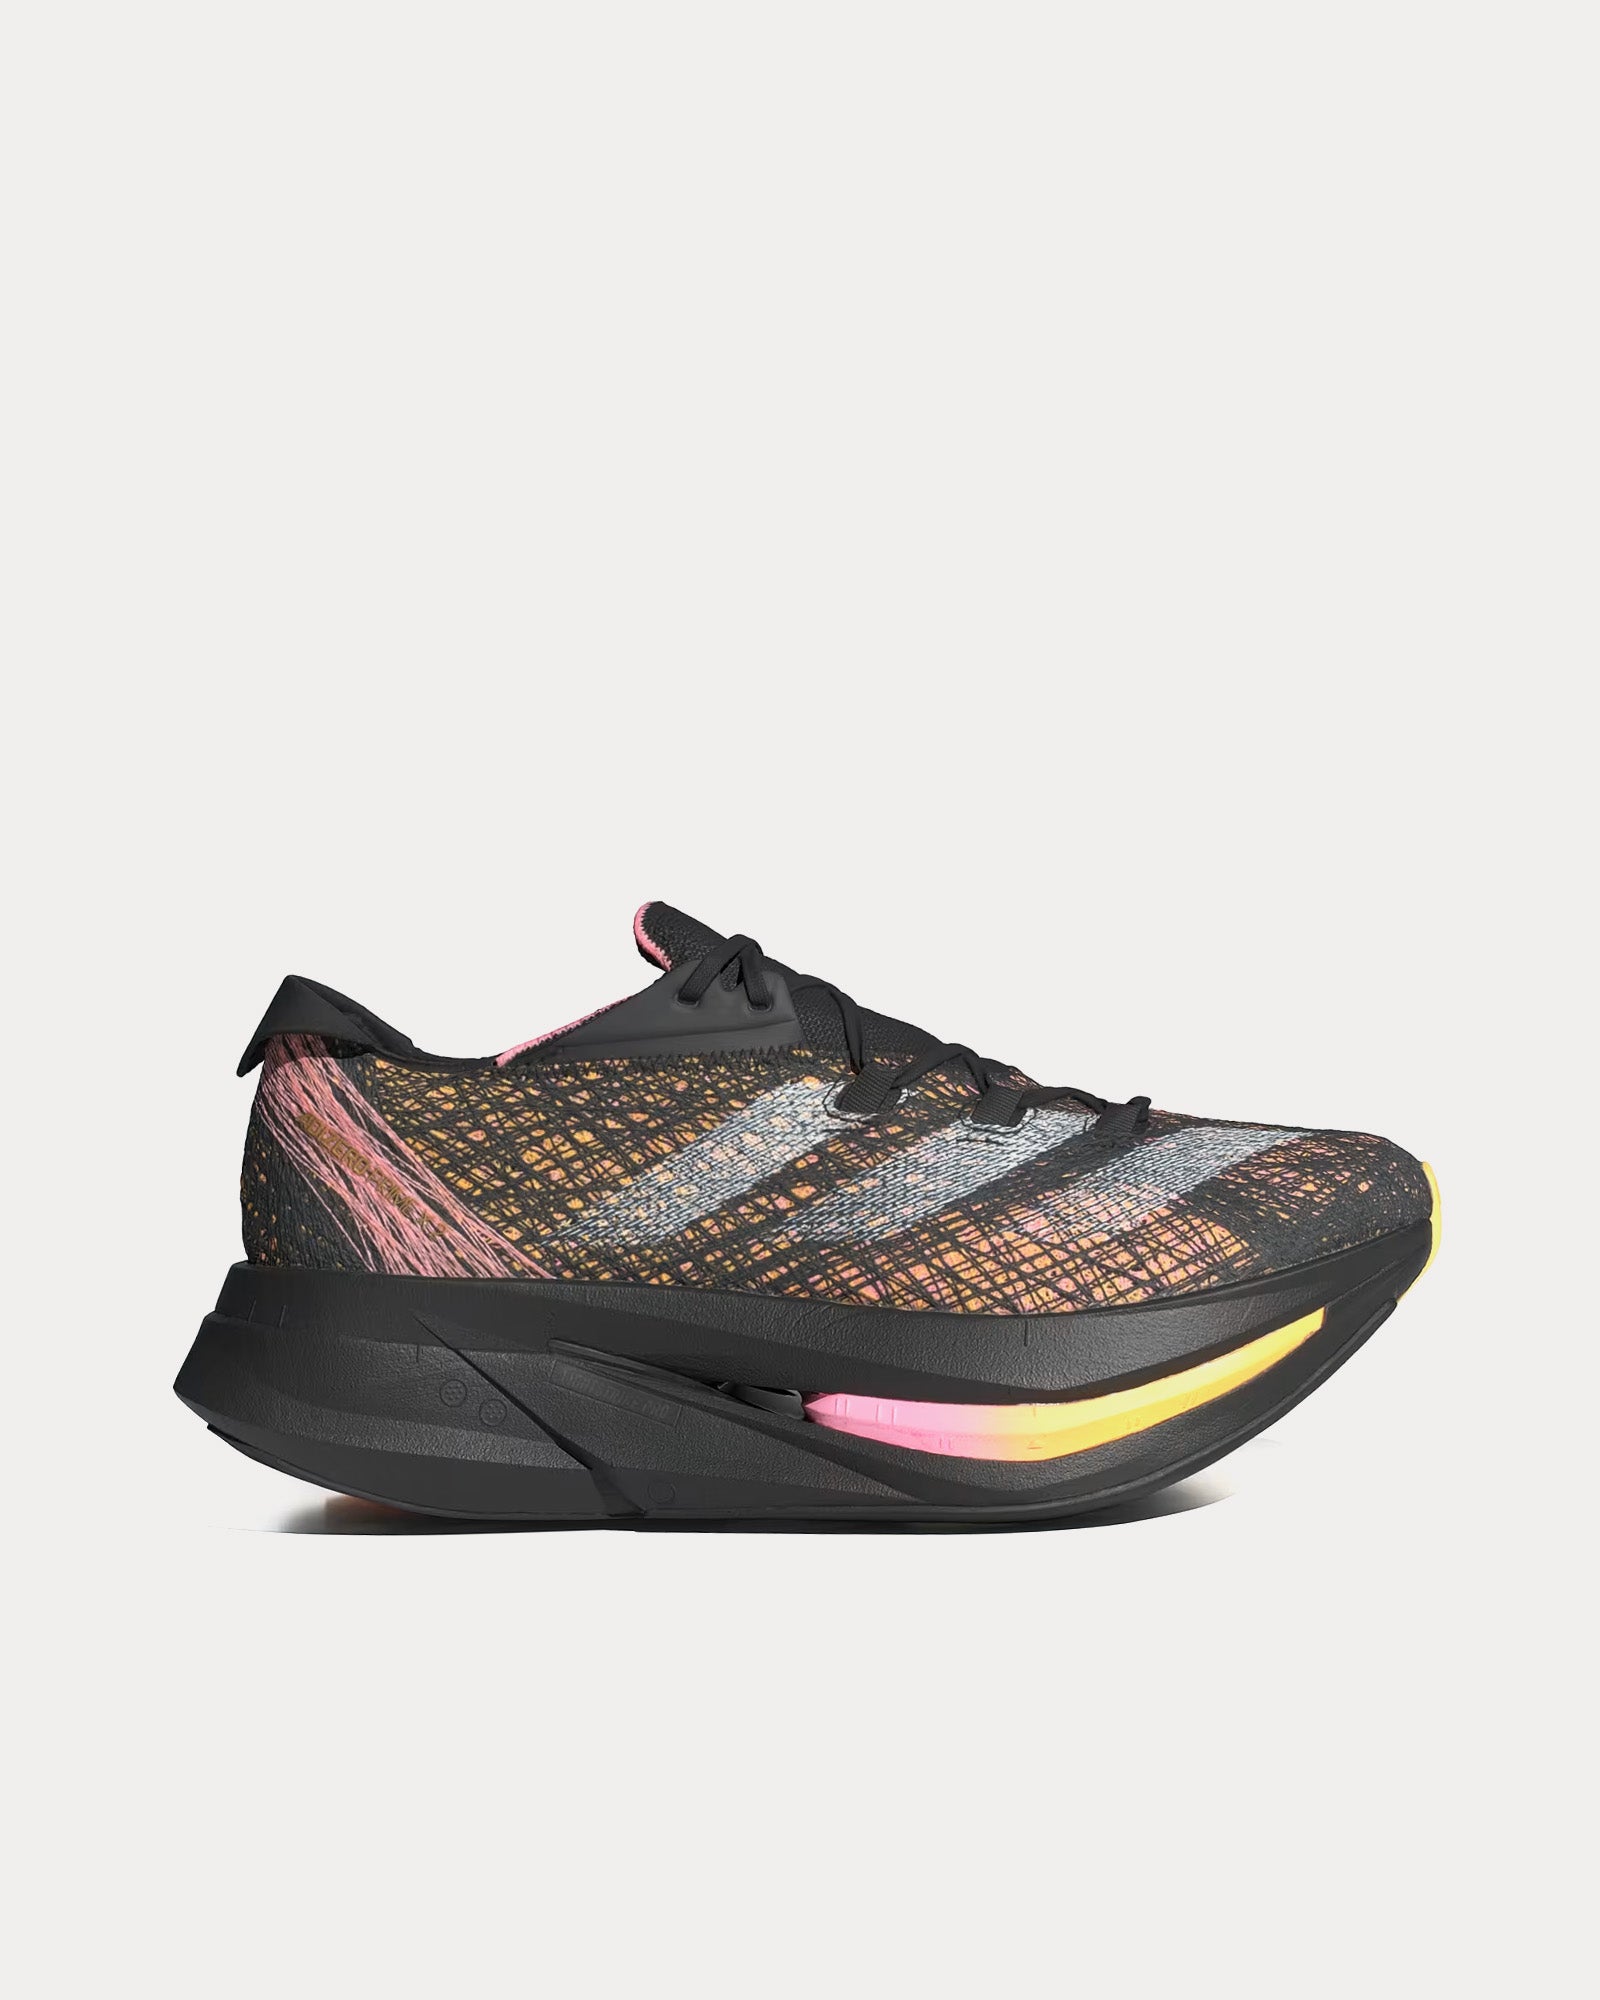 Adidas - Adizero Prime X 2.0 Core Black / Zero Metalic / Spark Running Shoes